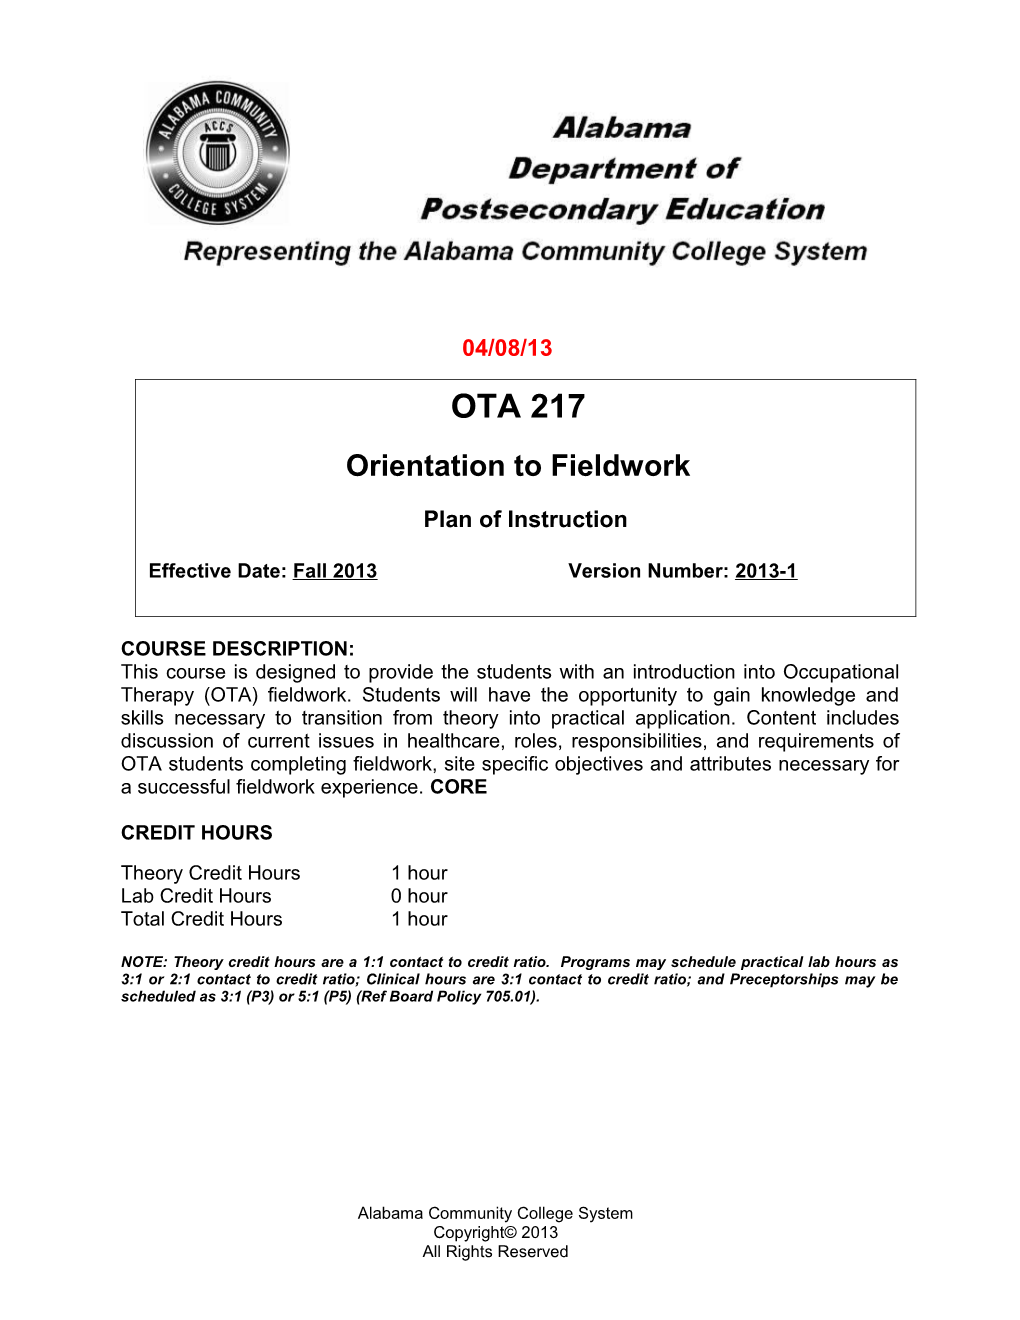 OTA 217 Orientation to Fieldwork